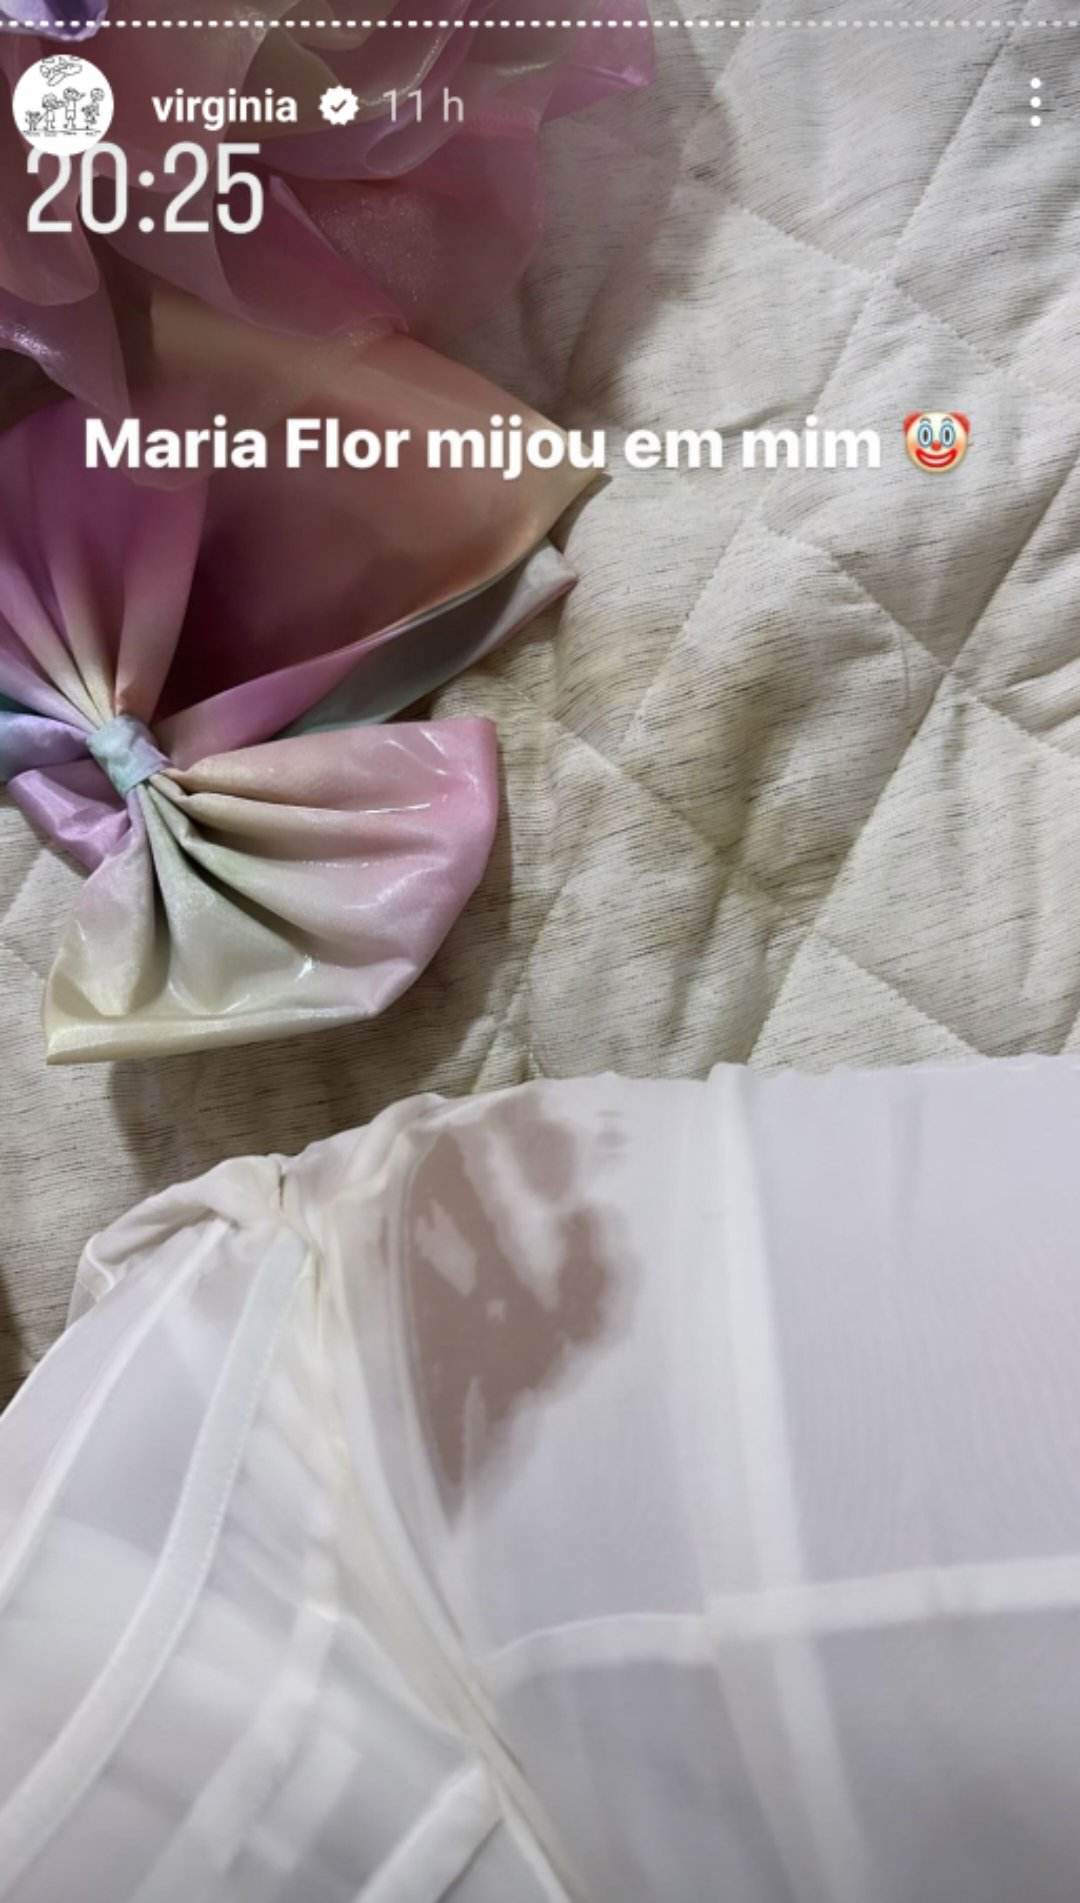 Virginia Fonseca tem vestido milionário destruído na festa da filha: "Mijou em mim"